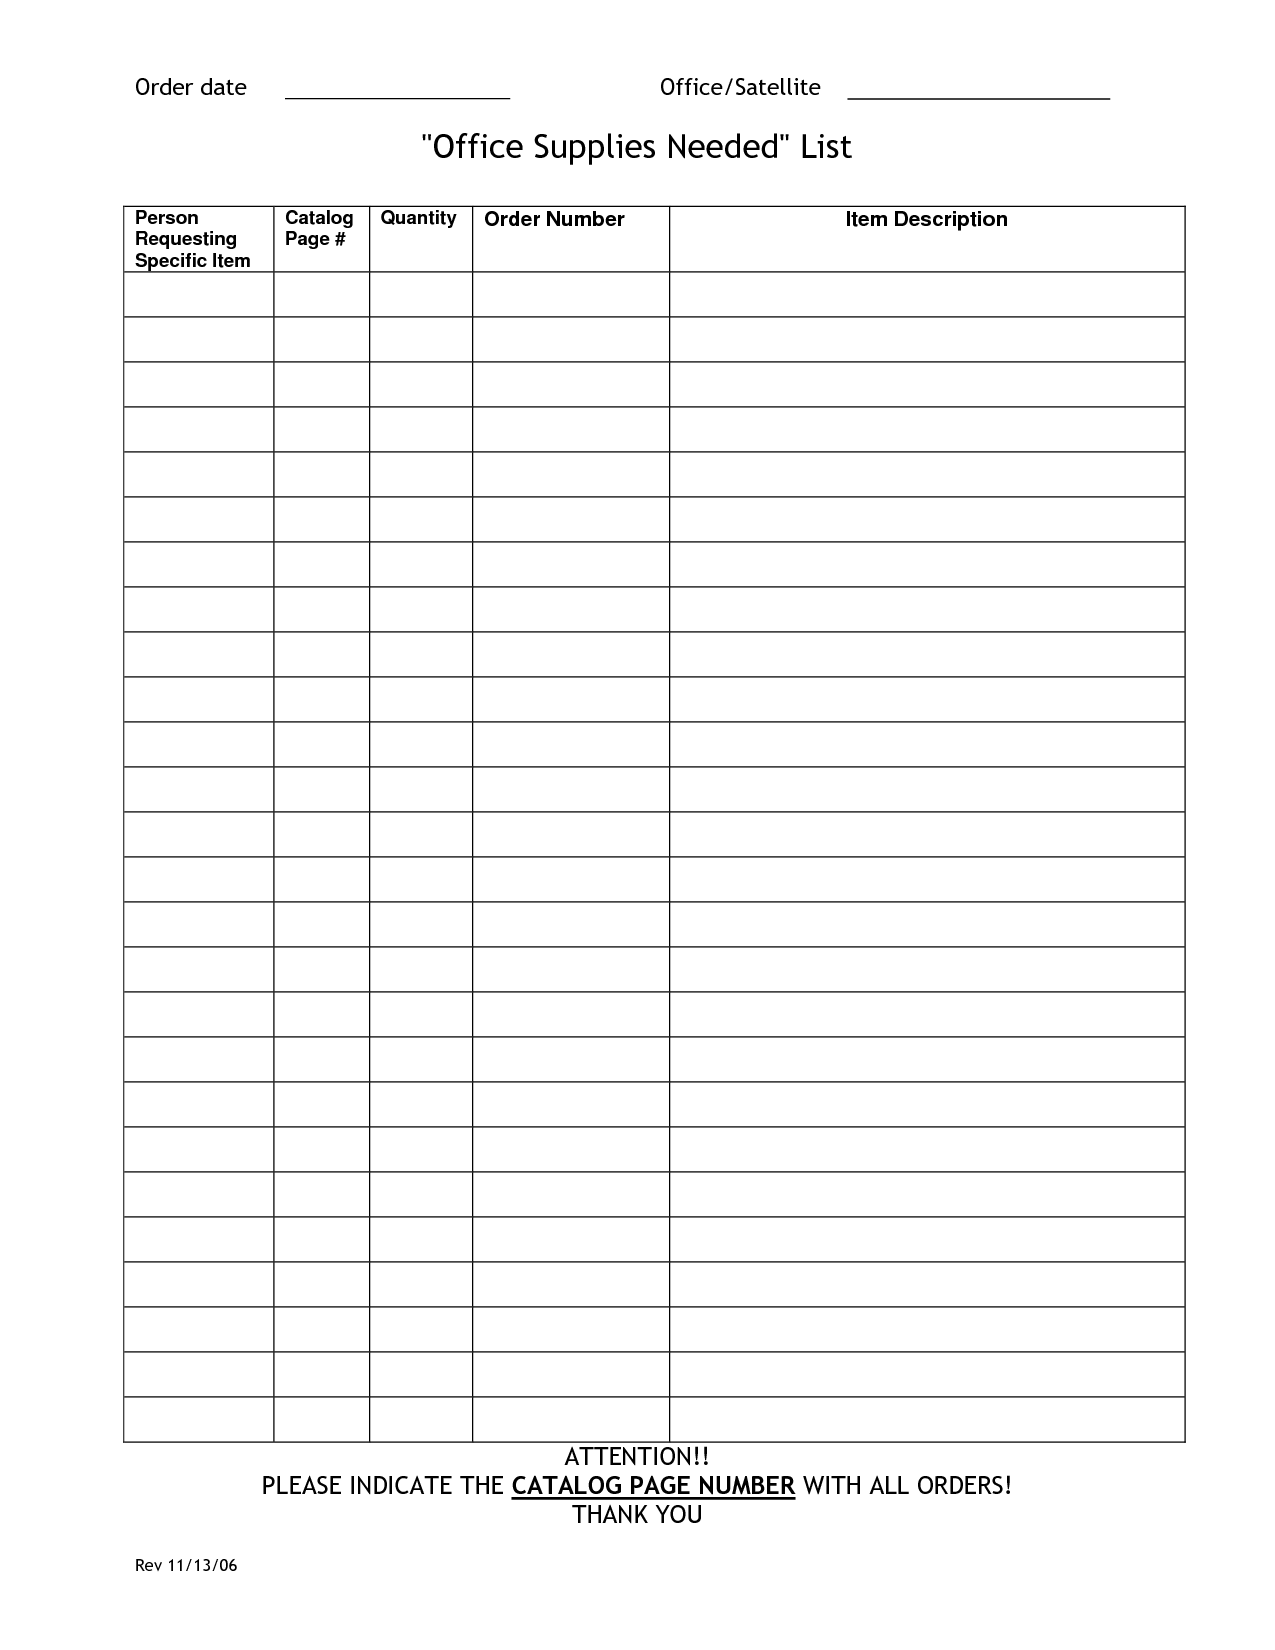 office supplies checklist